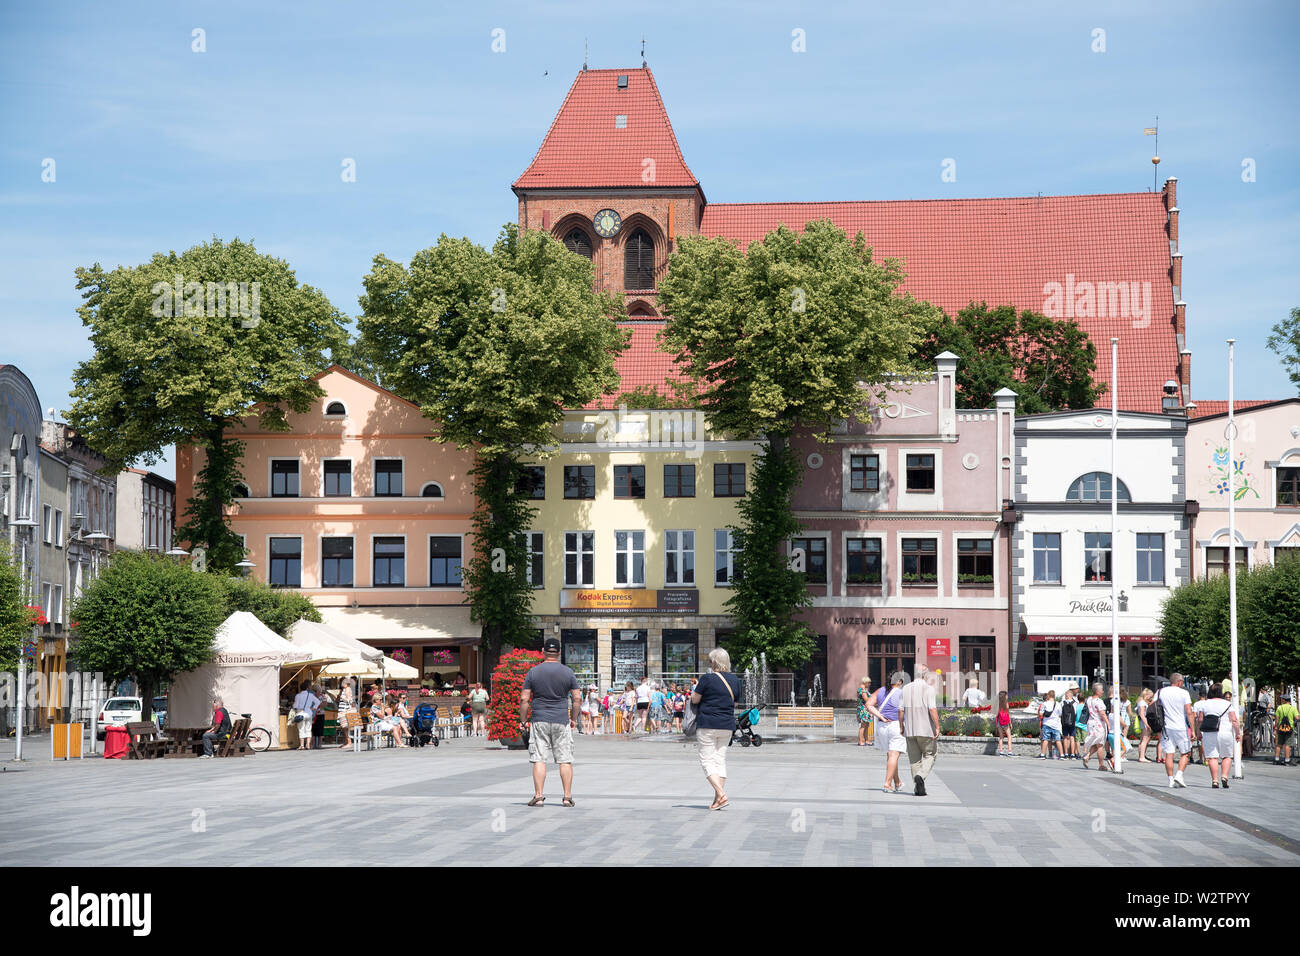 Luogo di mercato e la chiesa gotica di San Pietro e Paolo in Puck, Polonia. 25 giugno 2019 © Wojciech Strozyk / Alamy Stock Photo Foto Stock